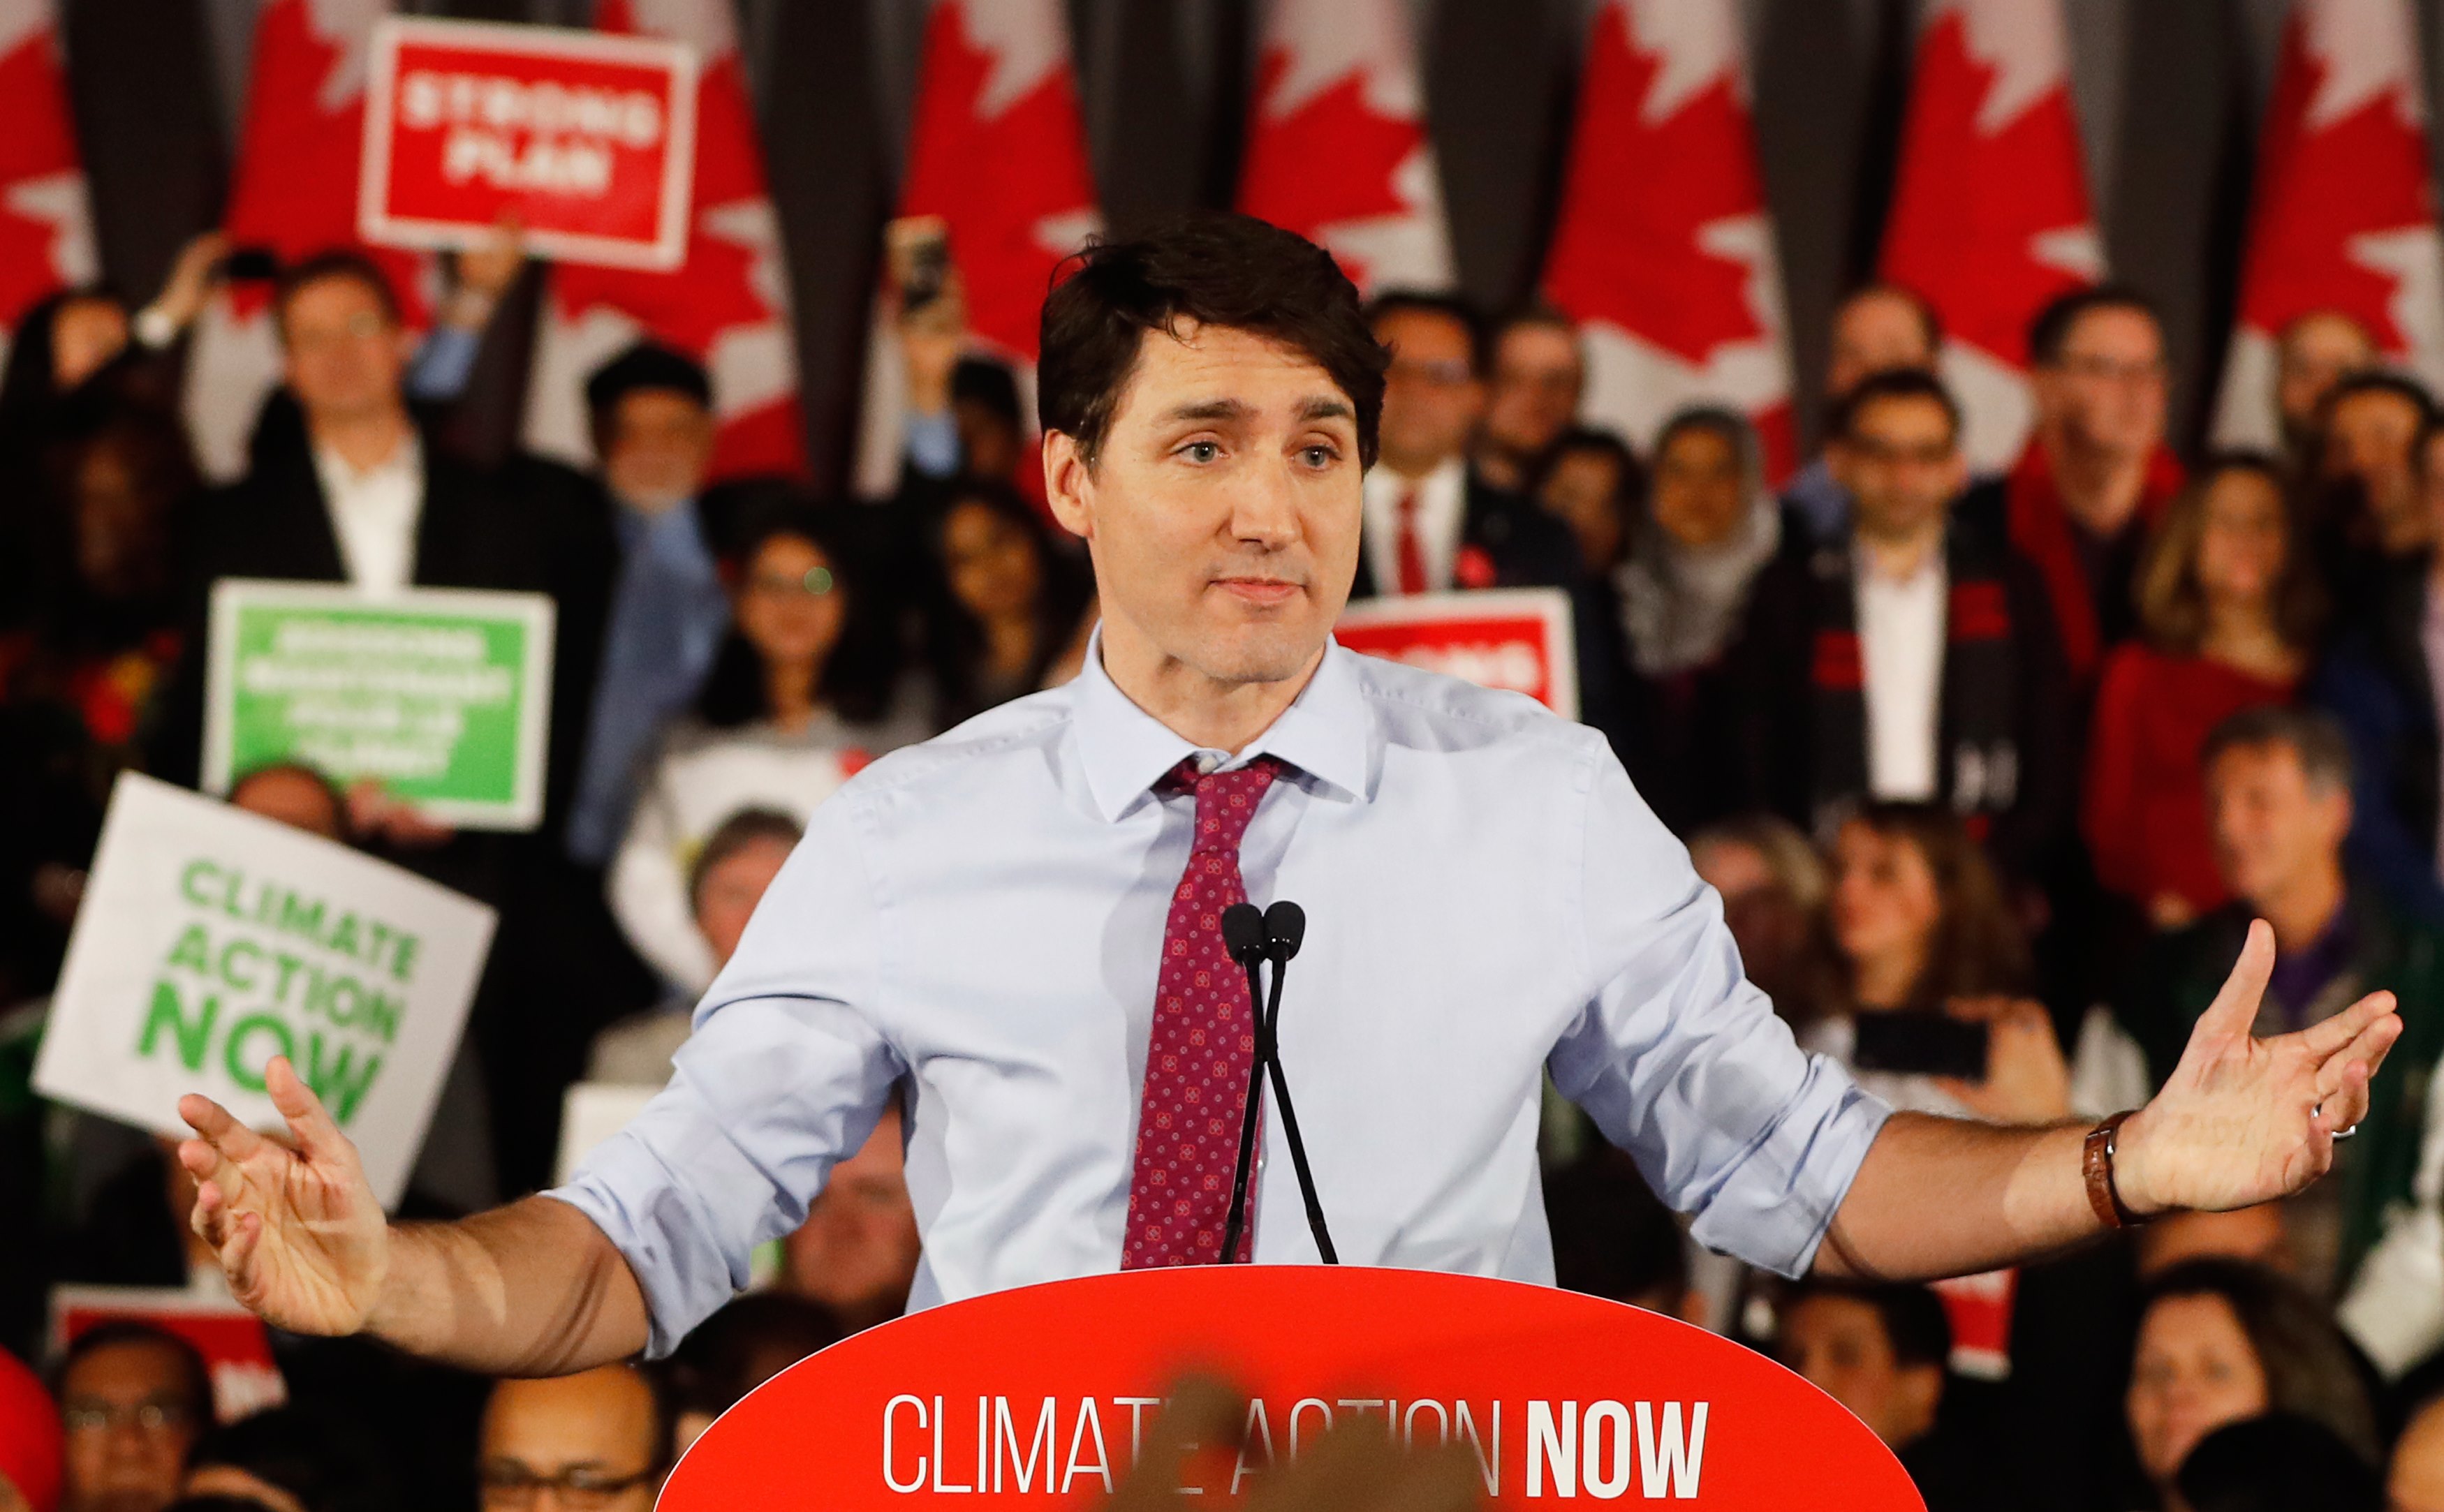 El escándalo de corrupción podría costarle la reelección en octubre a Trudeau.